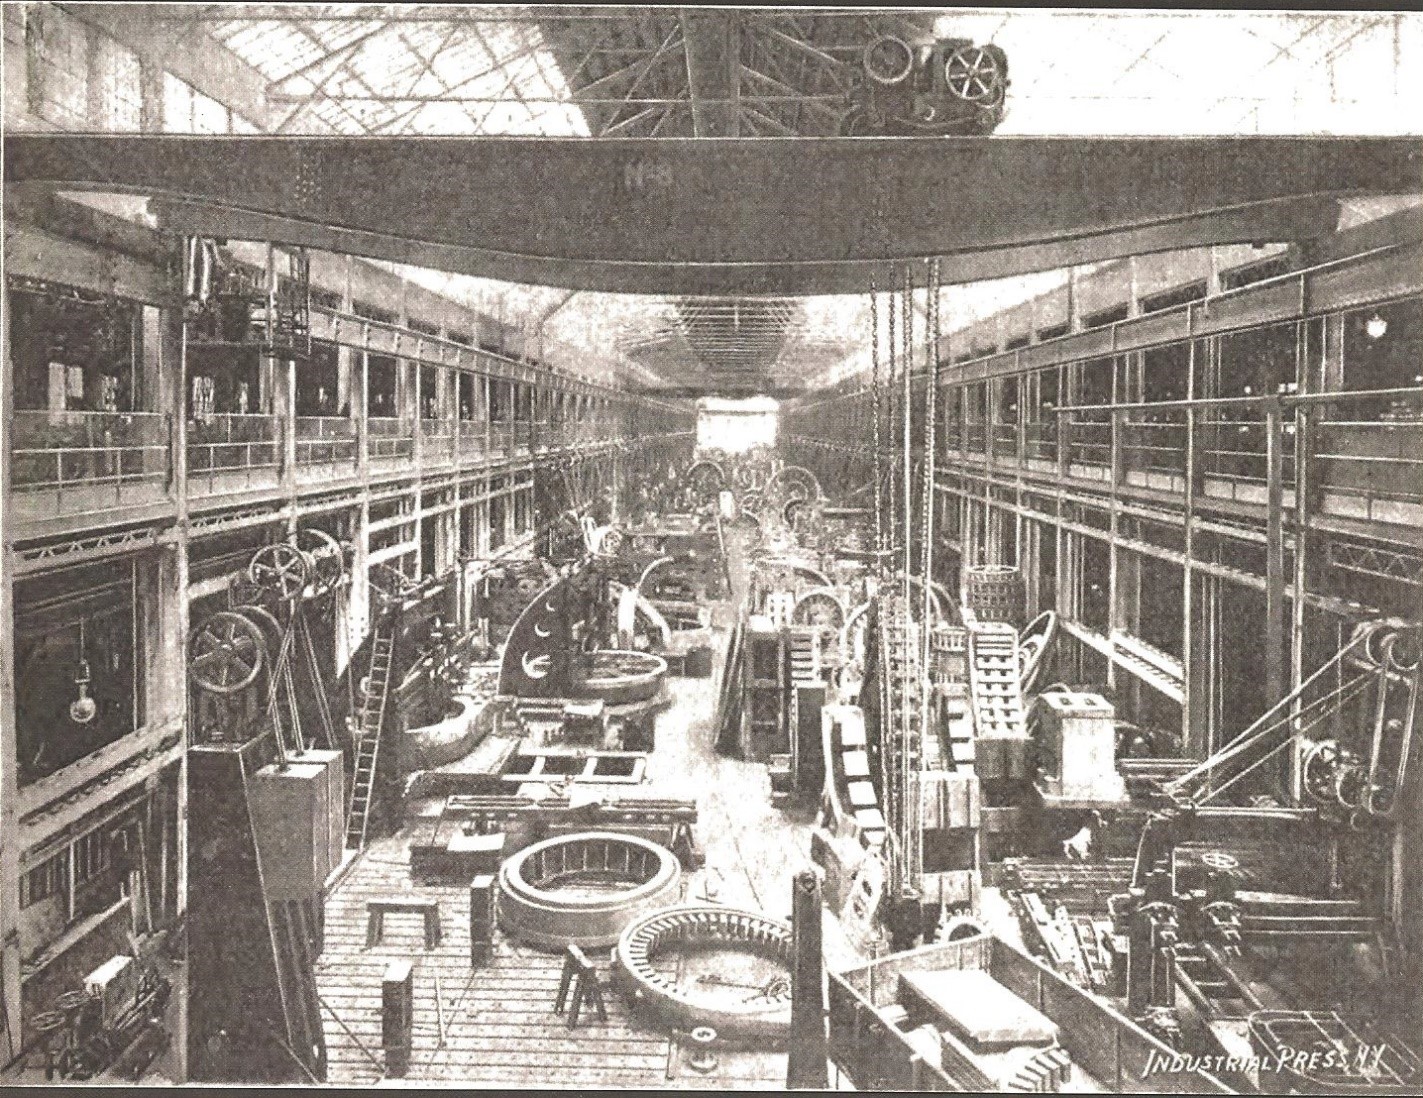 Inside Lunkenheimer in 1915